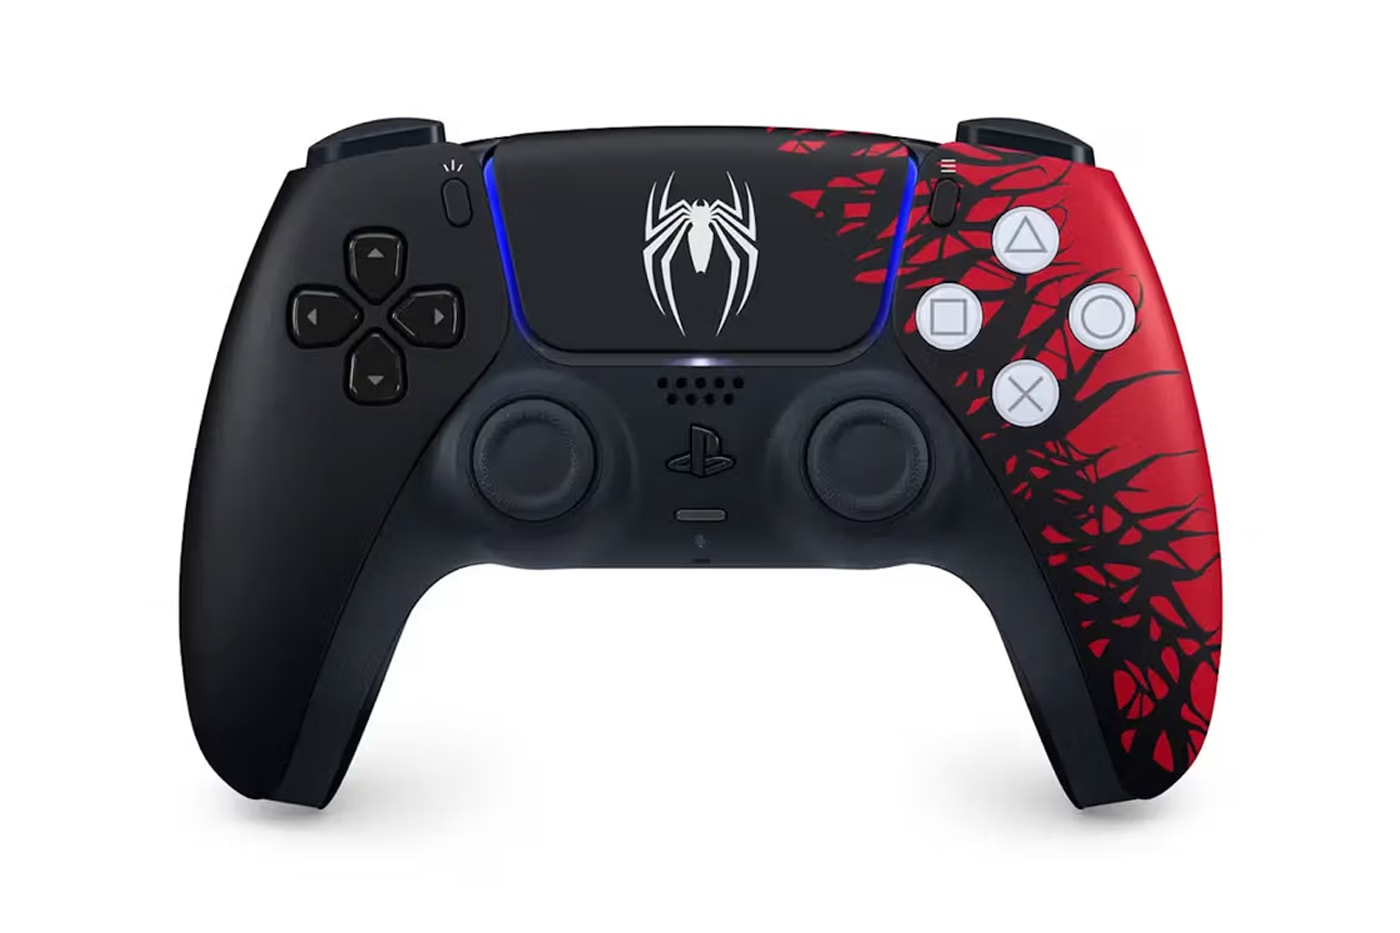 ソニーから『スパイダーマン』仕様のプレイステーション 5が登場 Sony Marvel Limited-Edition Spider-Man PS5 Console Controller Bundle order price retail website faceplate dualsense video game set